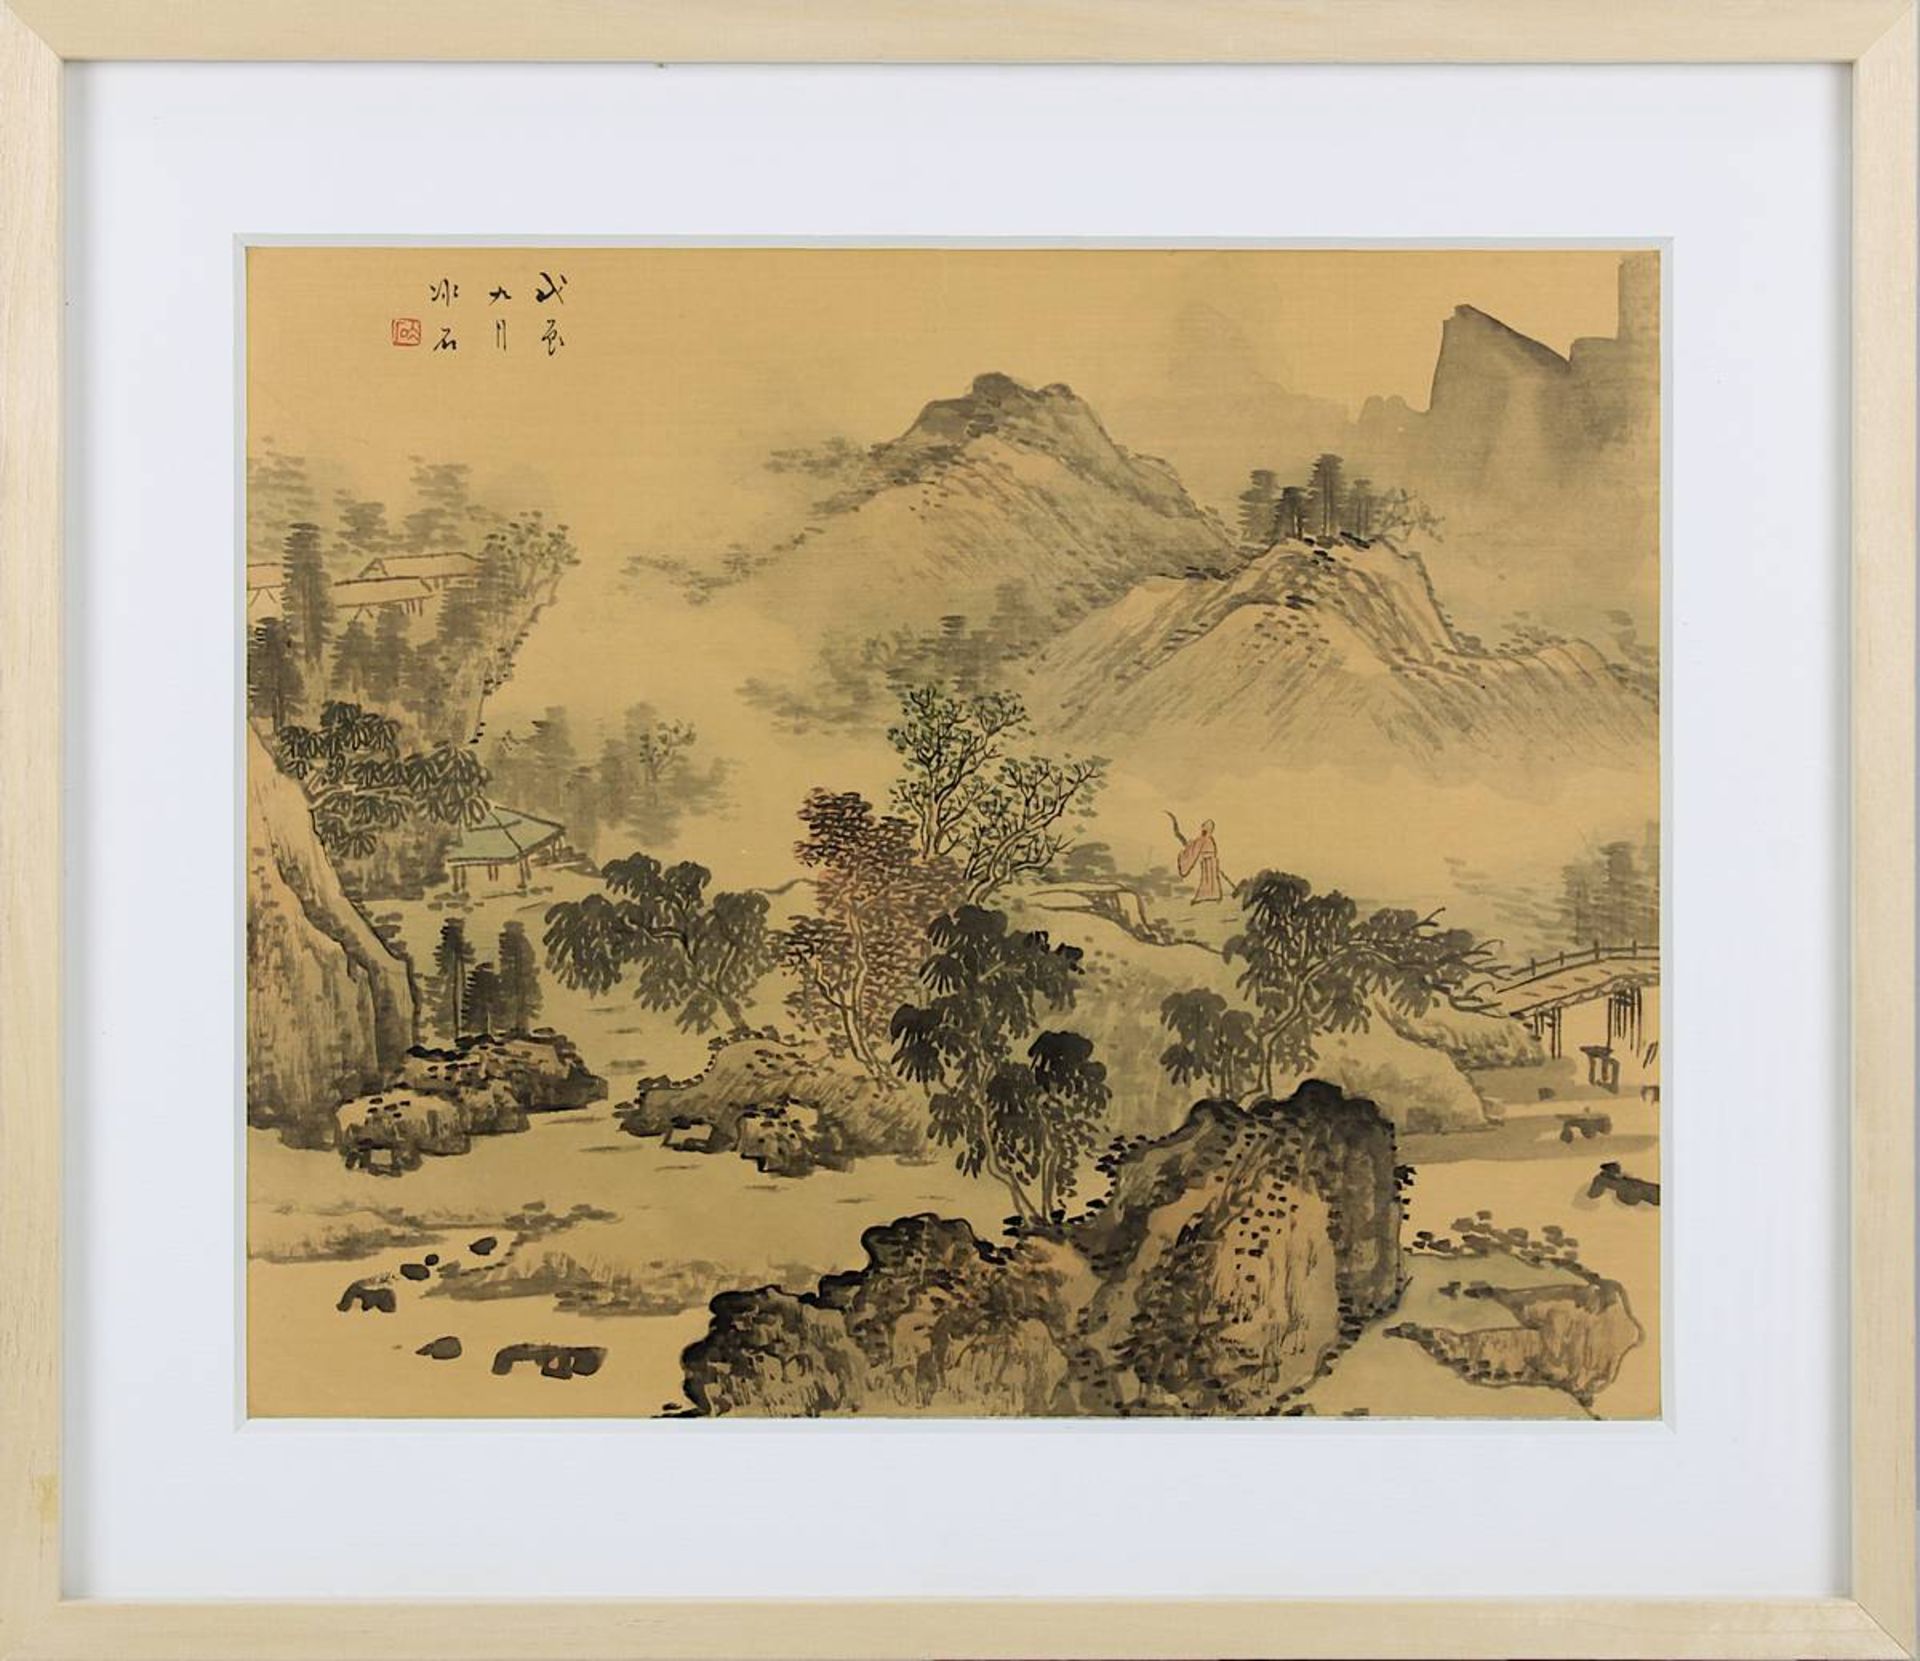 Chinesisches Landschaftsaquarell auf Seide, 19. Jh., in Grautönen und zartem Rot auf beigen Seidengr